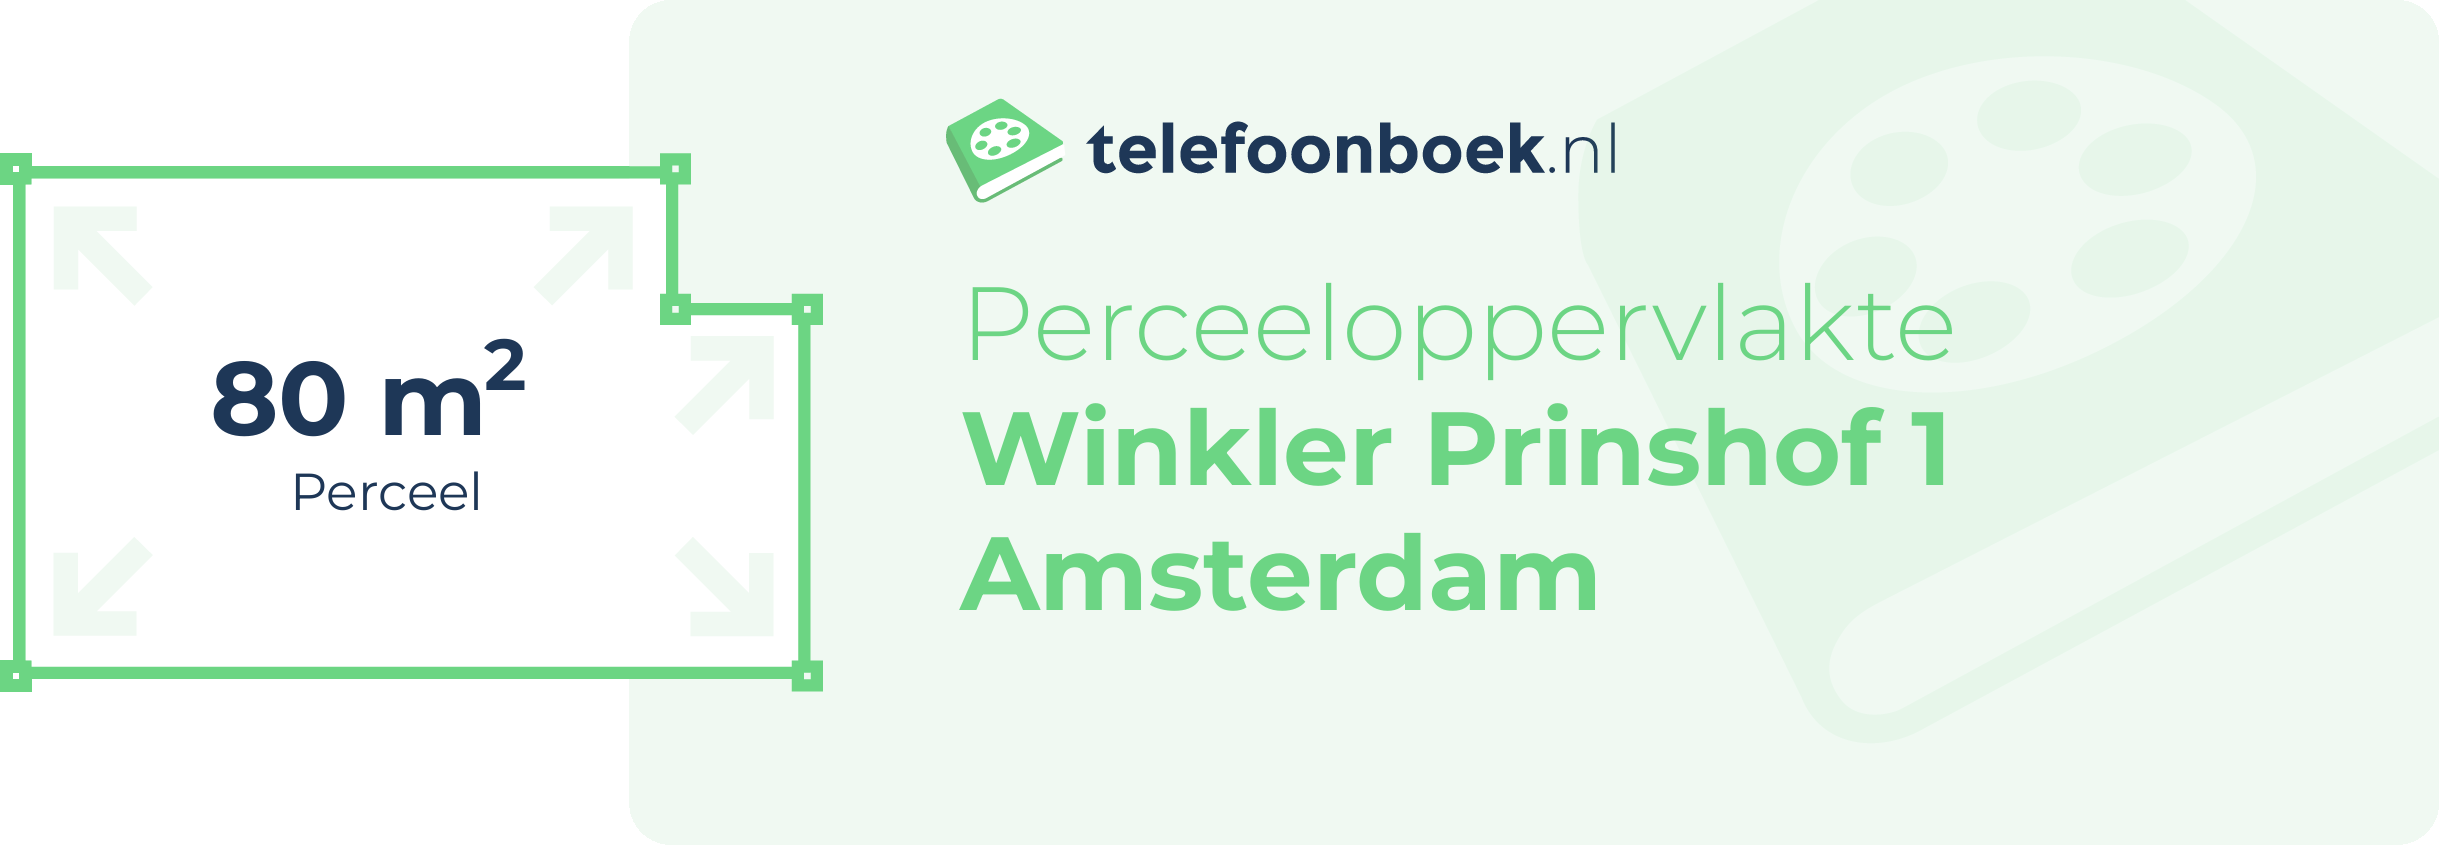 Perceeloppervlakte Winkler Prinshof 1 Amsterdam